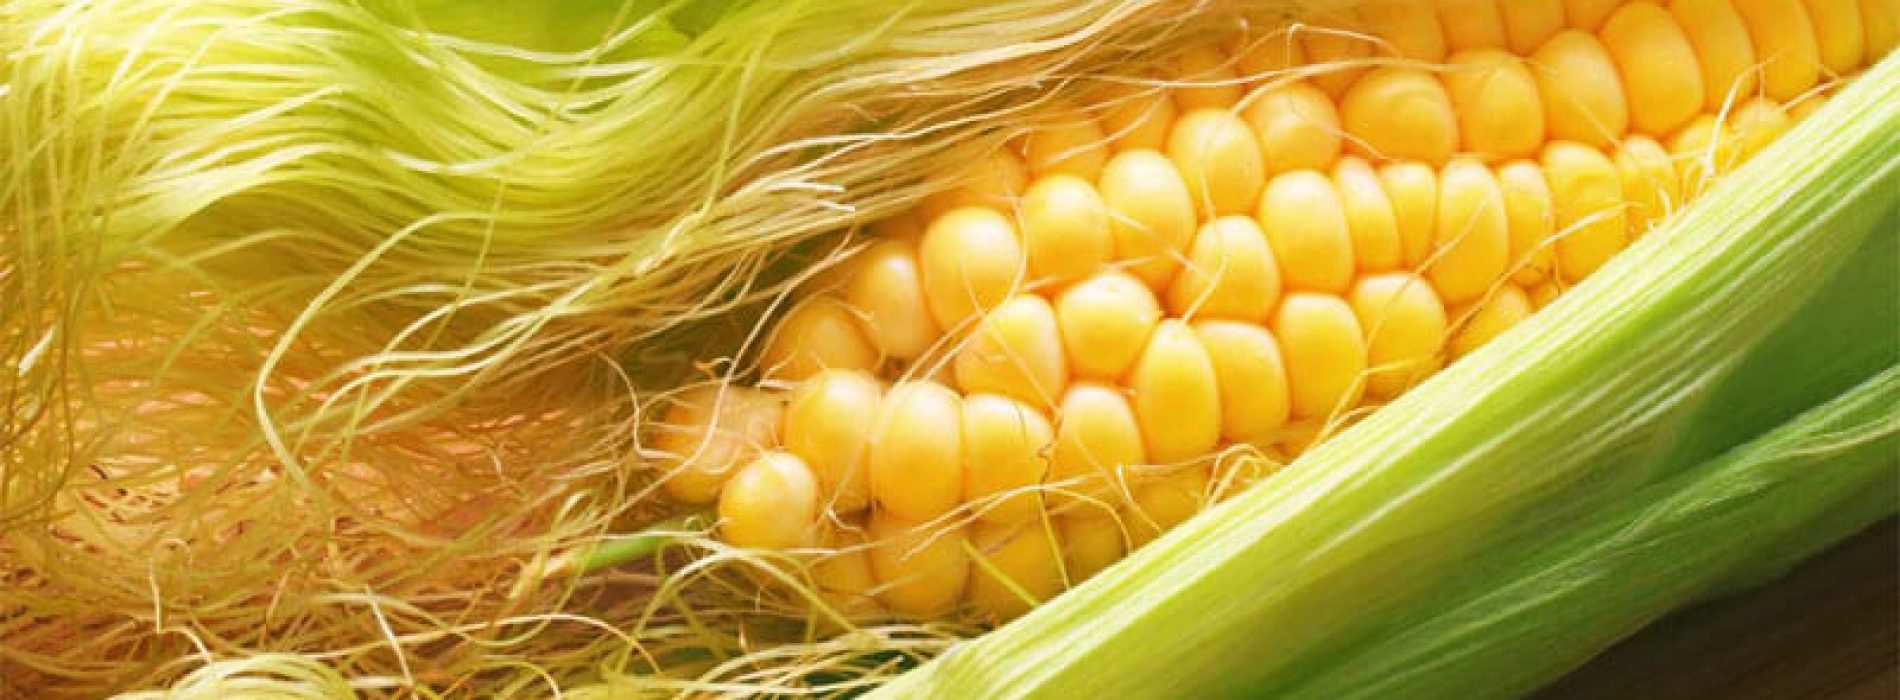 Maïszijde kan volgens onderzoek ontsteking op celniveau voorkomen